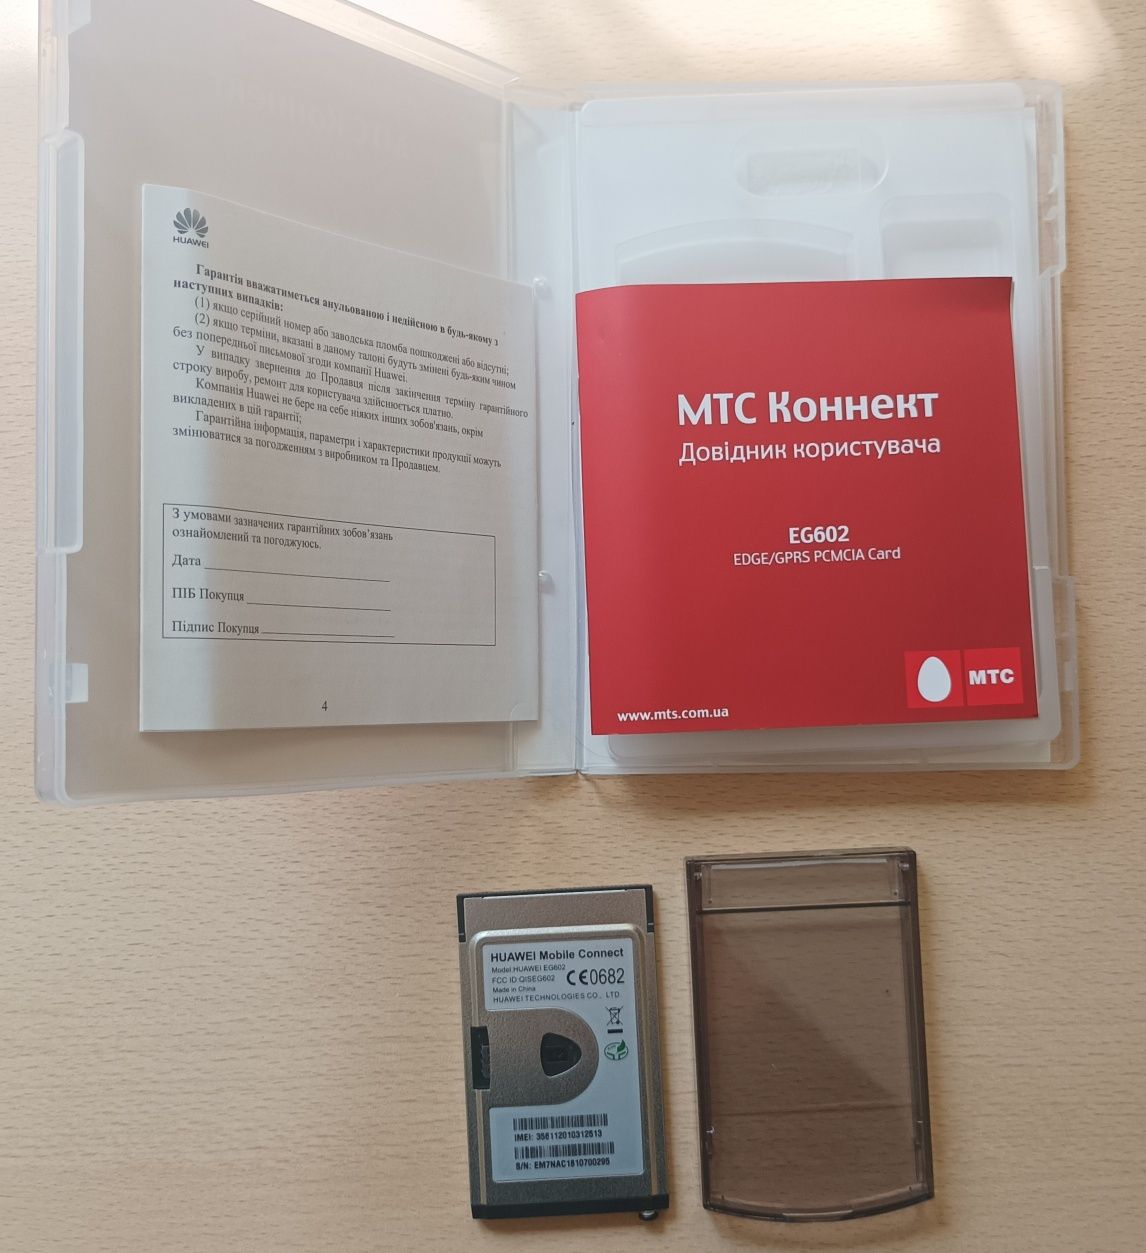 МТС Коннект eg602 для ноутбука EDGE/GPRS PCMCIA card